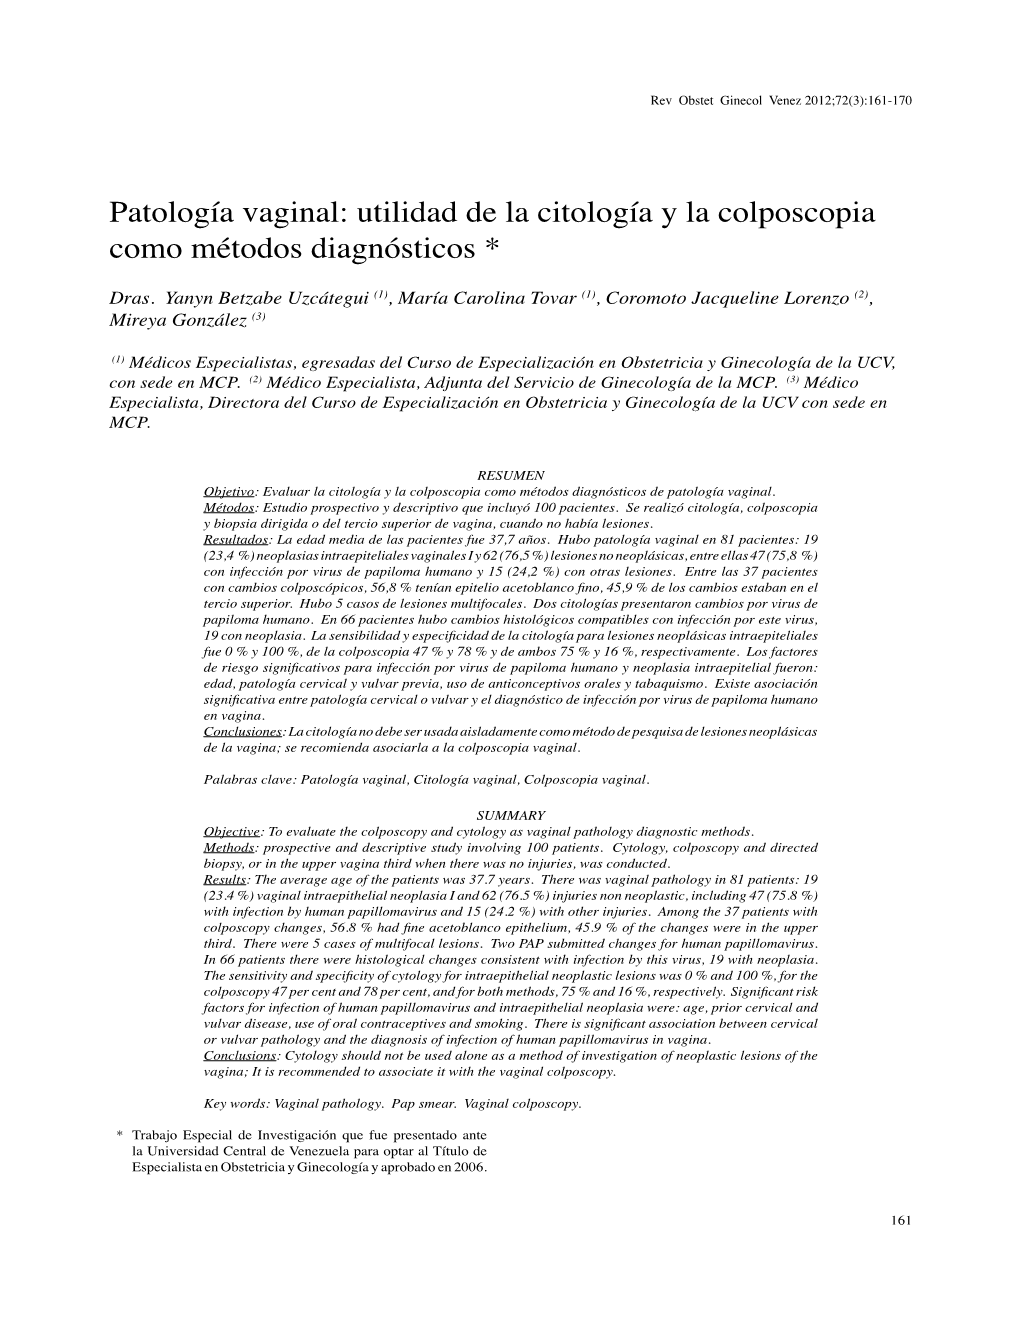 Patología Vaginal: Utilidad De La Citología Y La Colposcopia Como Métodos Diagnósticos *